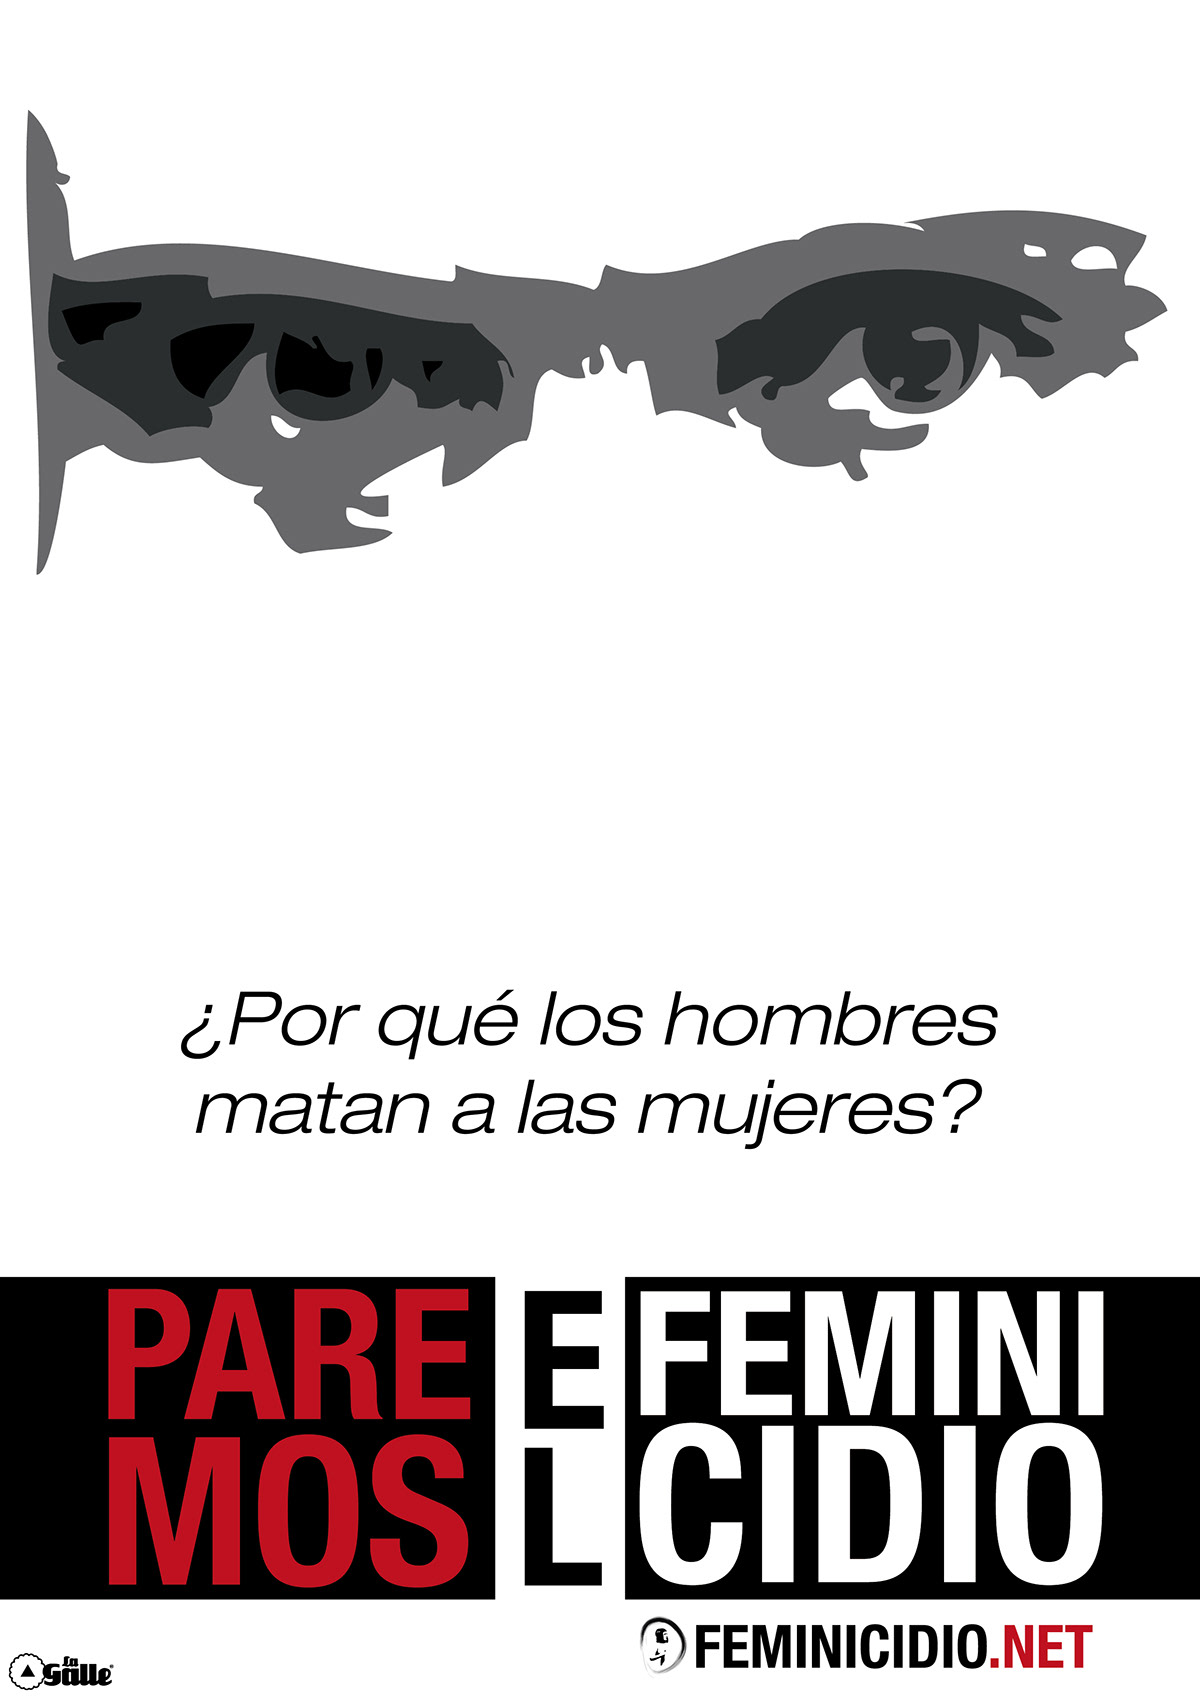 Feminicidio  feminicidio.net  digital art